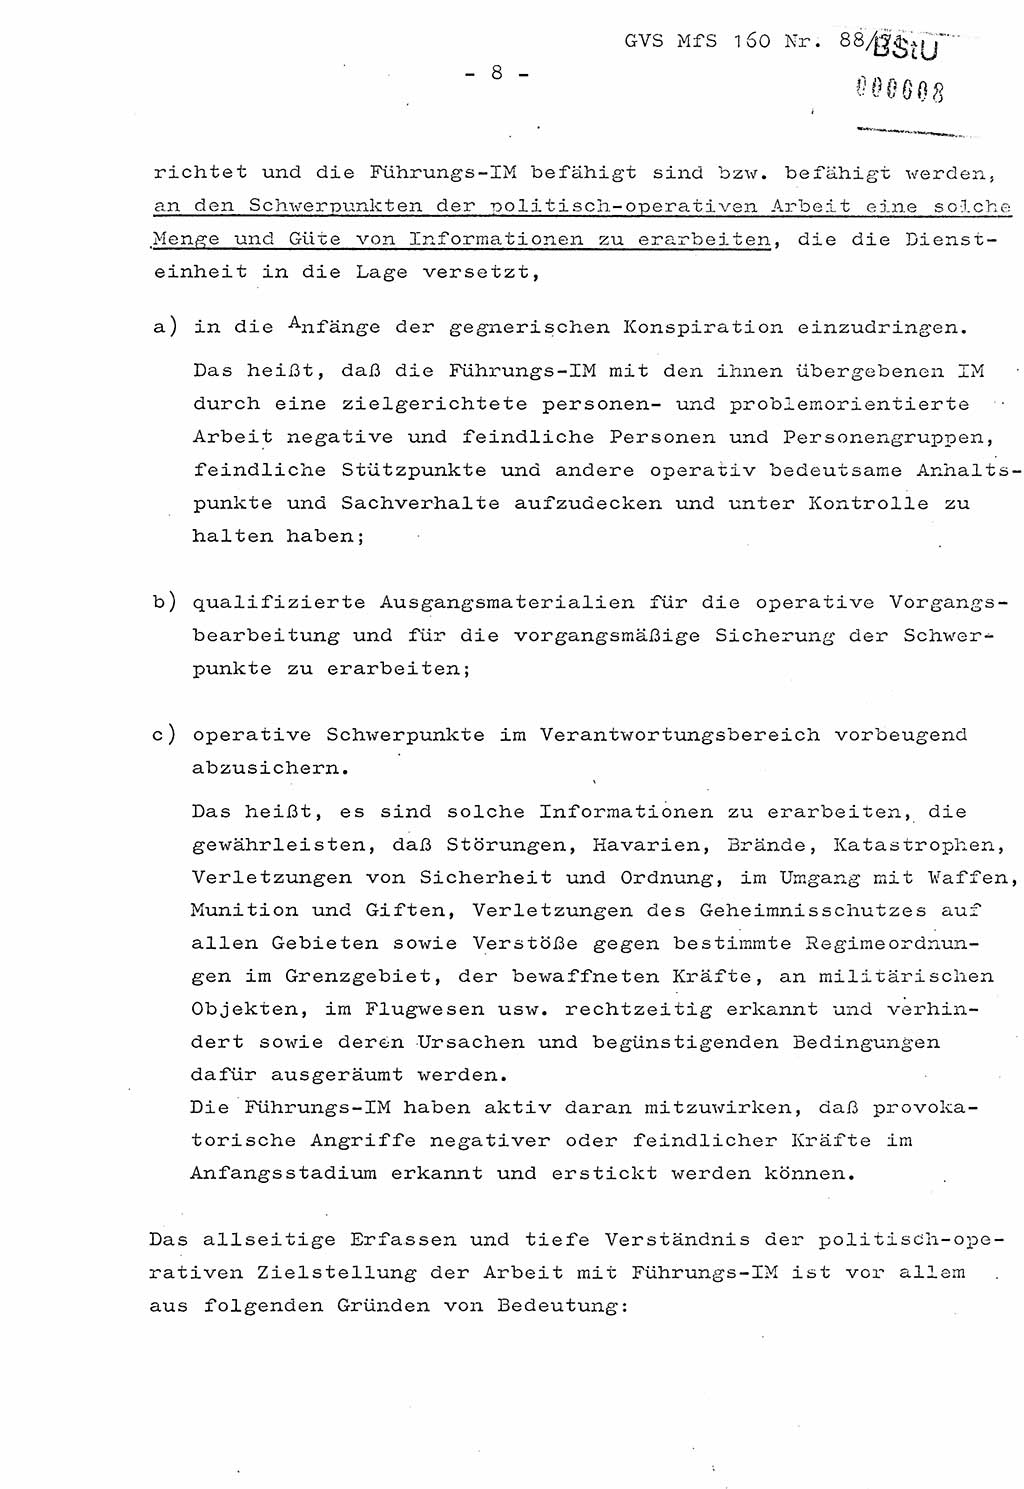 Dissertation Oberstleutnant Josef Schwarz (BV Schwerin), Major Fritz Amm (JHS), Hauptmann Peter Gräßler (JHS), Ministerium für Staatssicherheit (MfS) [Deutsche Demokratische Republik (DDR)], Juristische Hochschule (JHS), Geheime Verschlußsache (GVS) 160-88/71, Potsdam 1972, Seite 8 (Diss. MfS DDR JHS GVS 160-88/71 1972, S. 8)